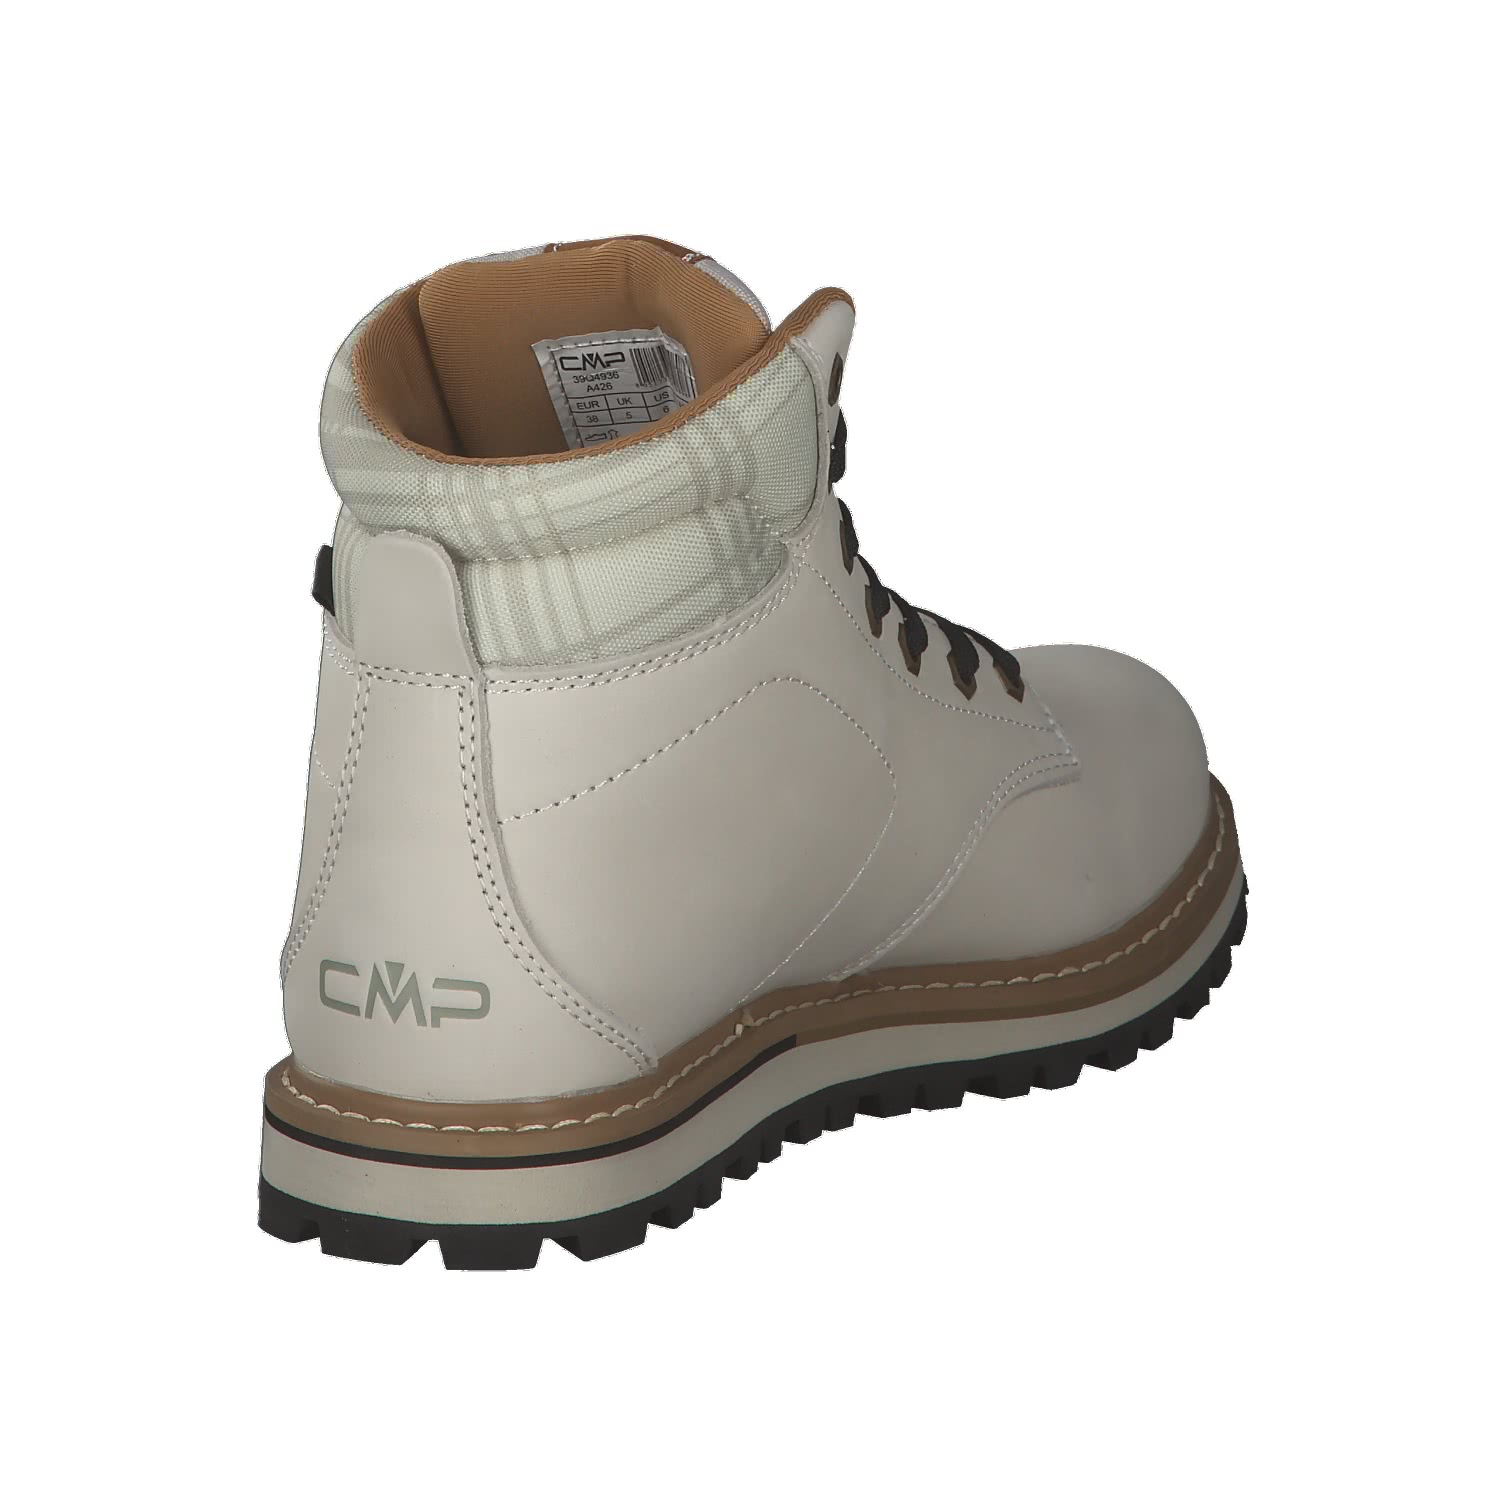 CMP Damen Boots Dorado Wmn Lifestyle Shoes WP 39Q4936 | eBay